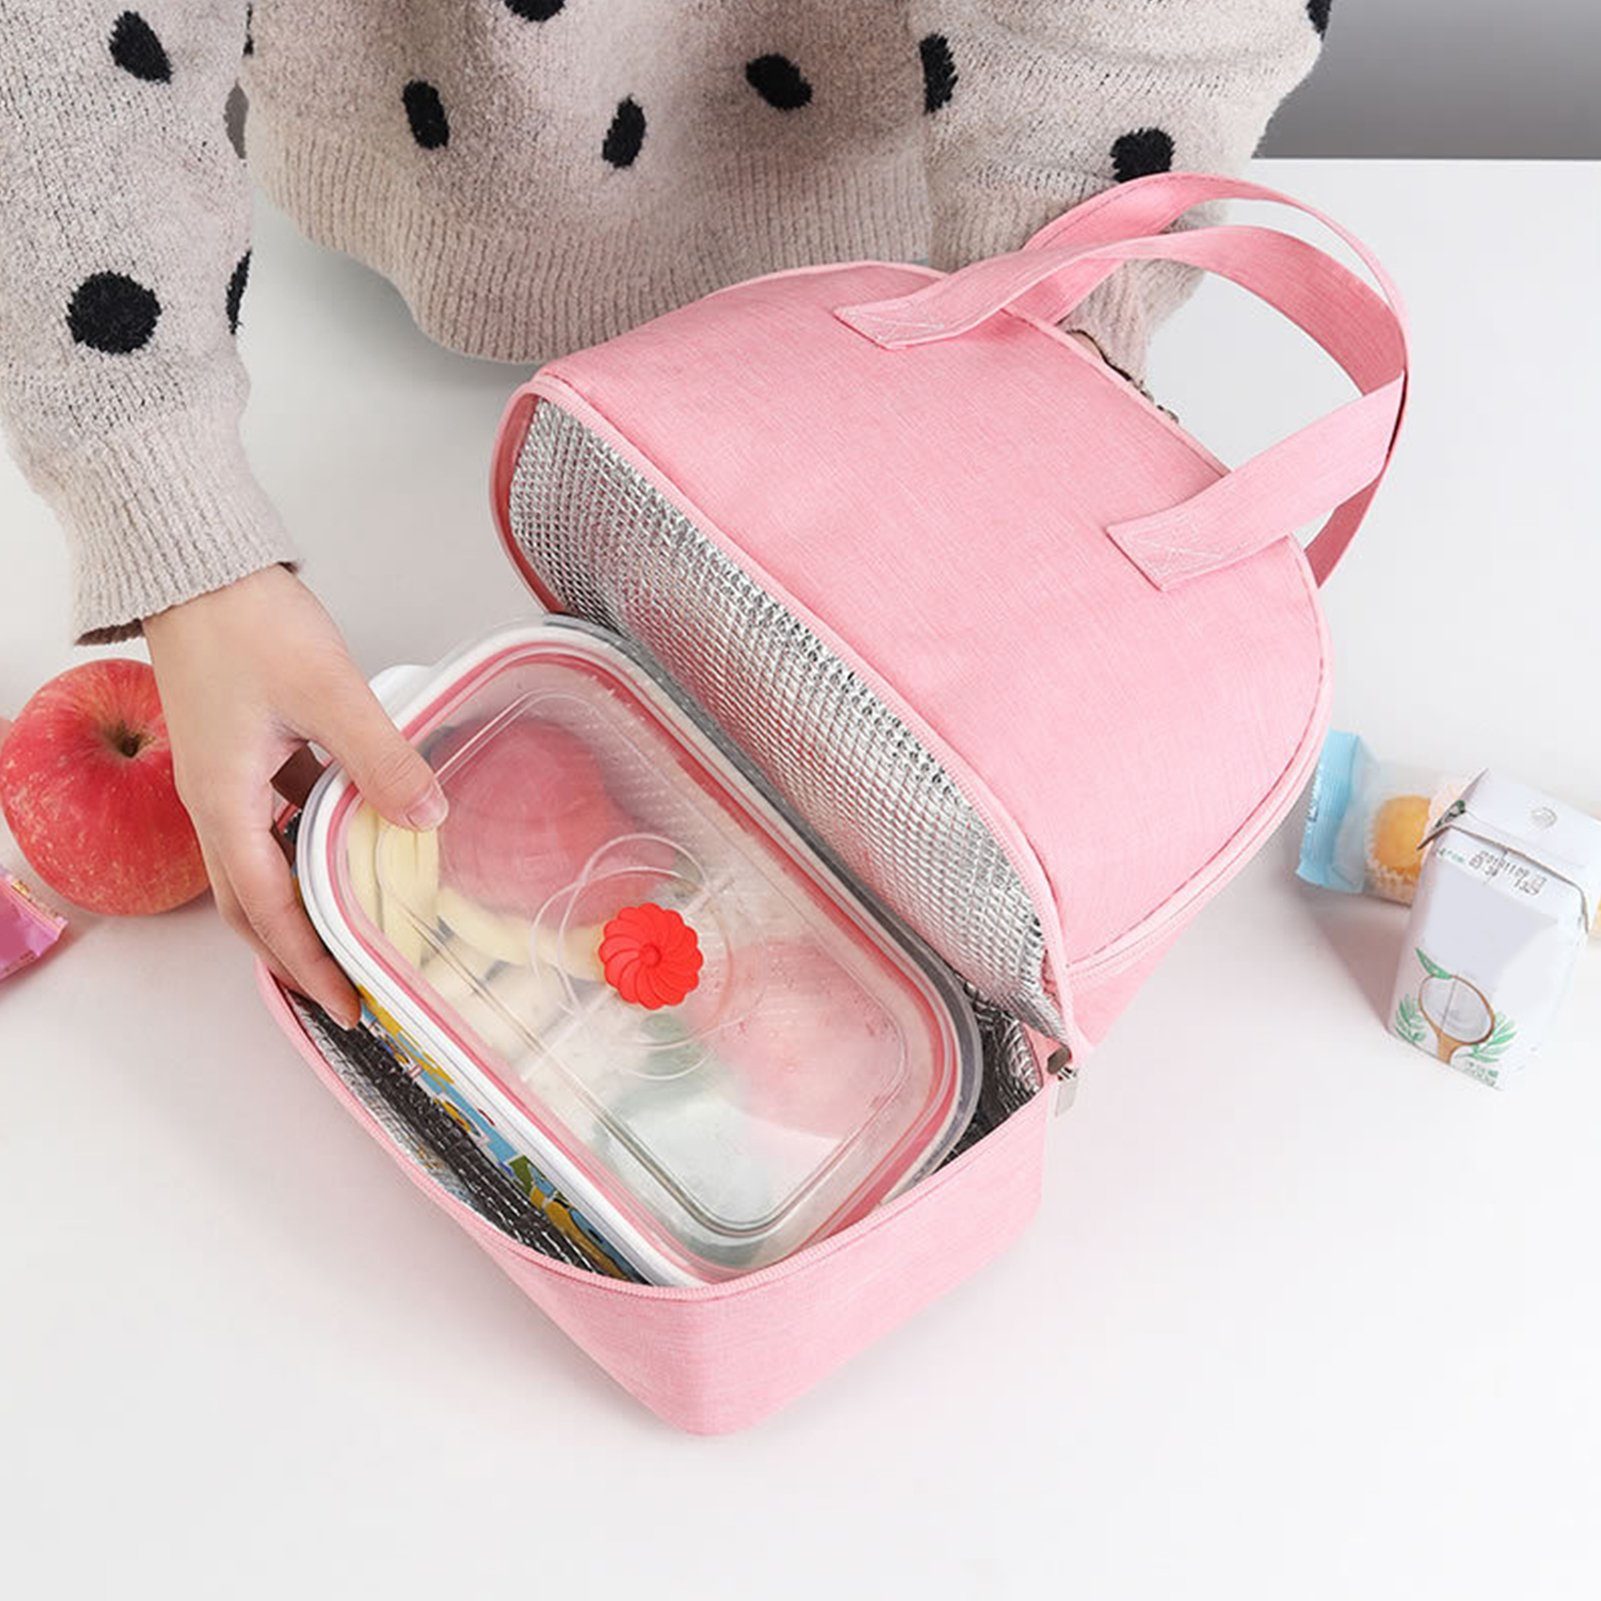 Lunch süße Auffangbehälter für Lunchboxen Bag Kühltasche Lunchtasche Rosa Popubear